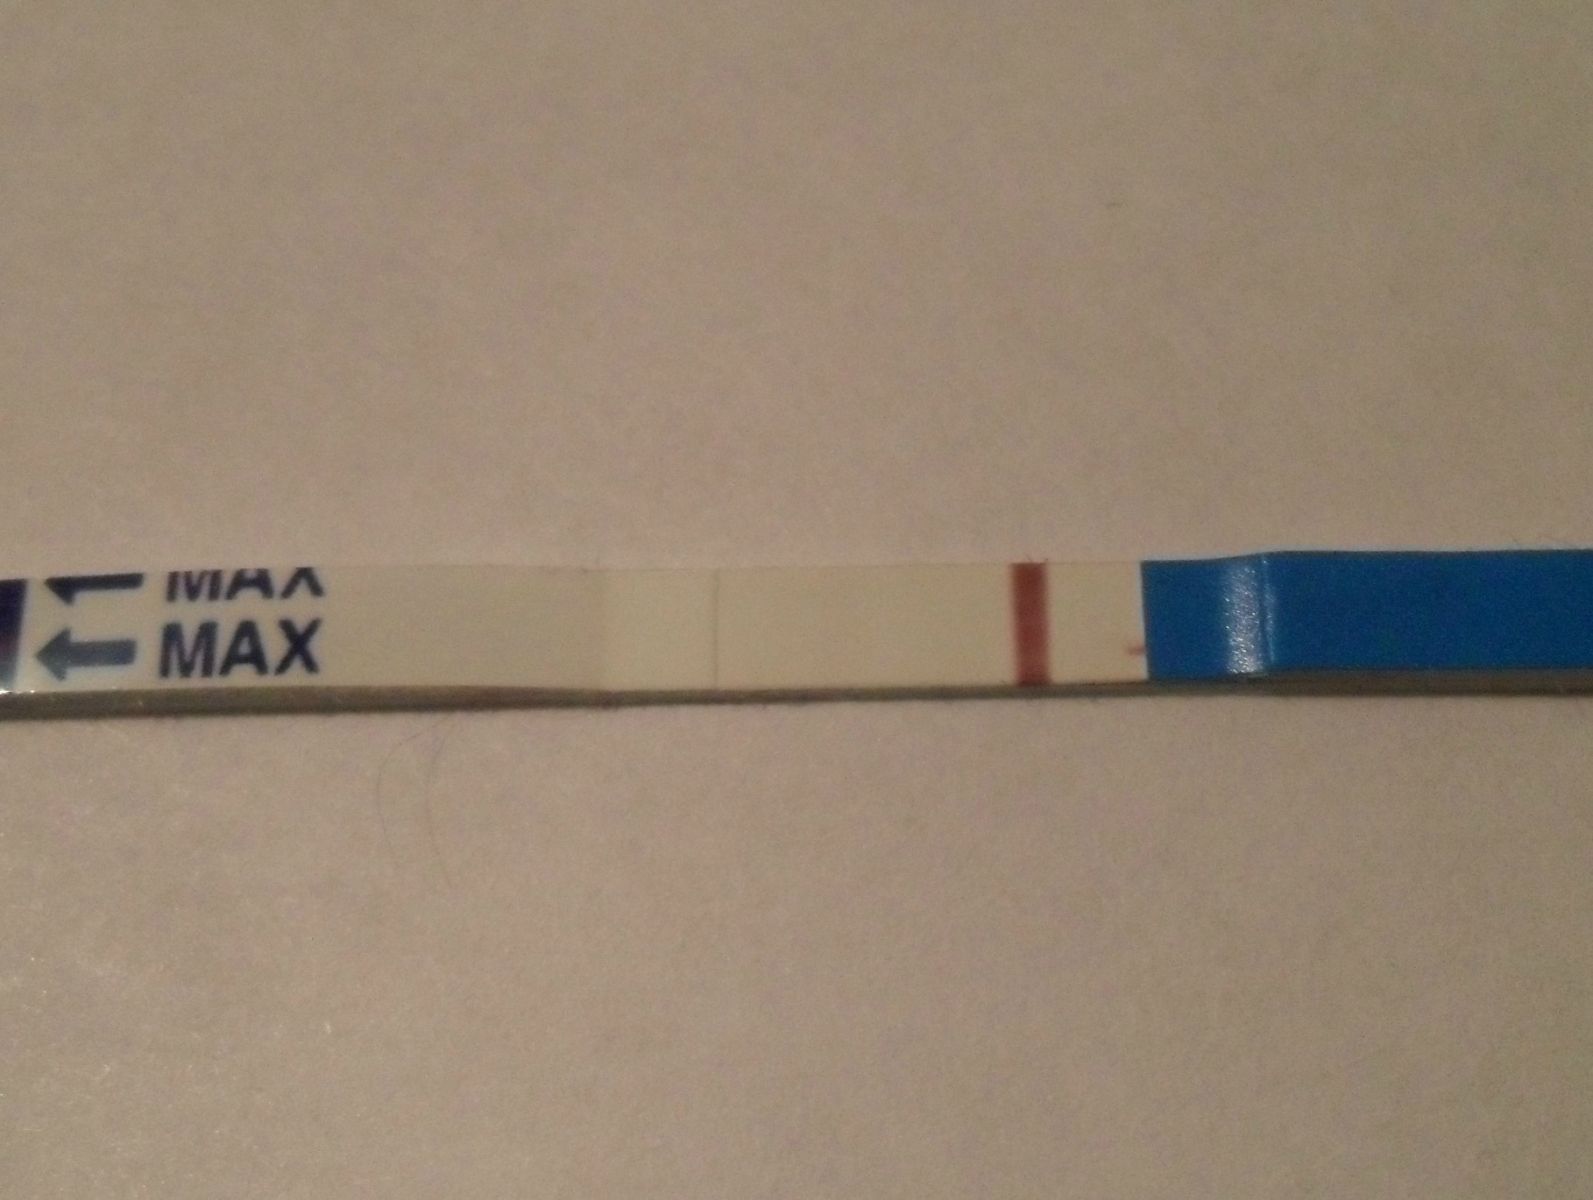 Тест на беременность, если вторая полоска еле видна, что это означает?